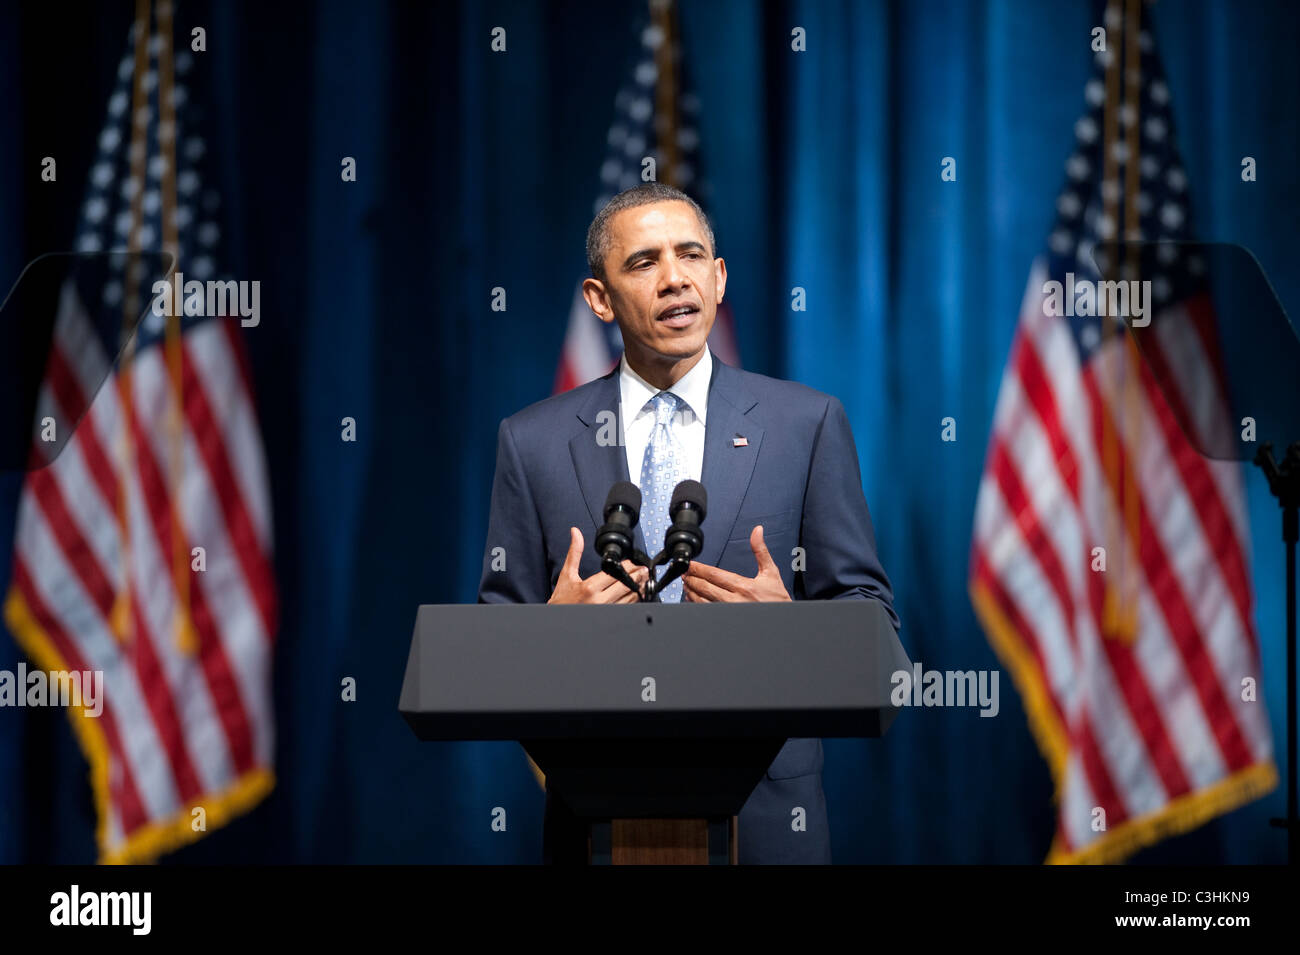 US-Präsident Barack Obama spricht von der Bühne auf einen politischen Spendenaktion in Austin, Texas. Stockfoto